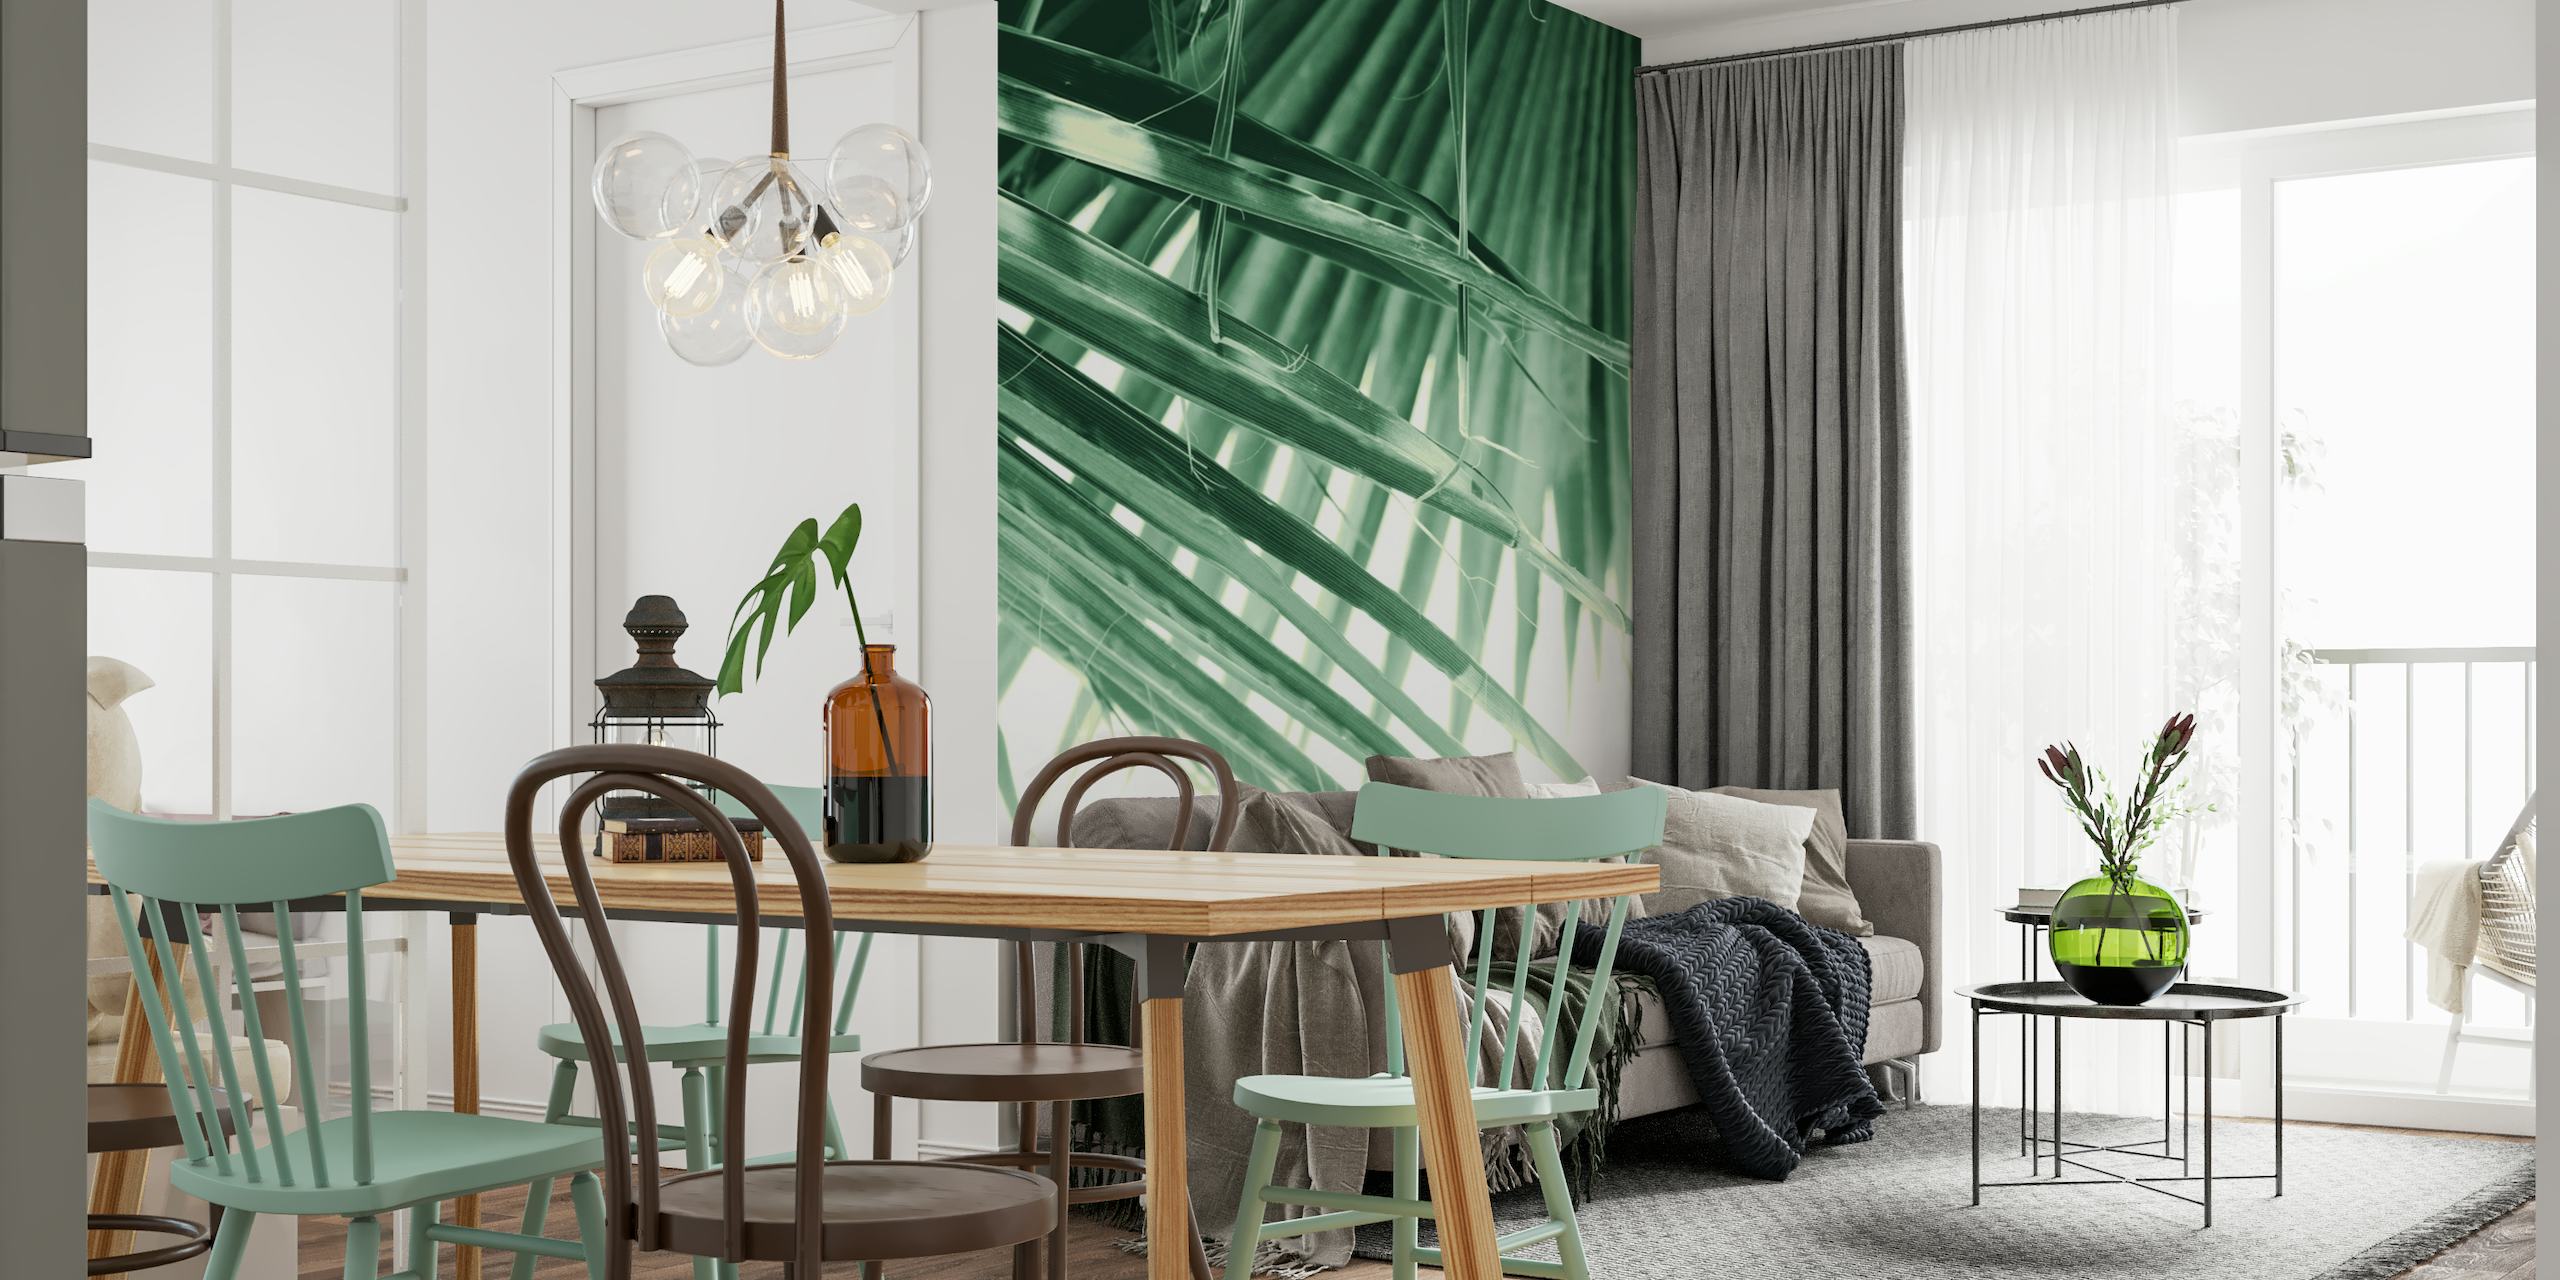 Mekano zelena lepezasto palmino lišće zidna slika sa sanjivim efektom svjetla i sjene